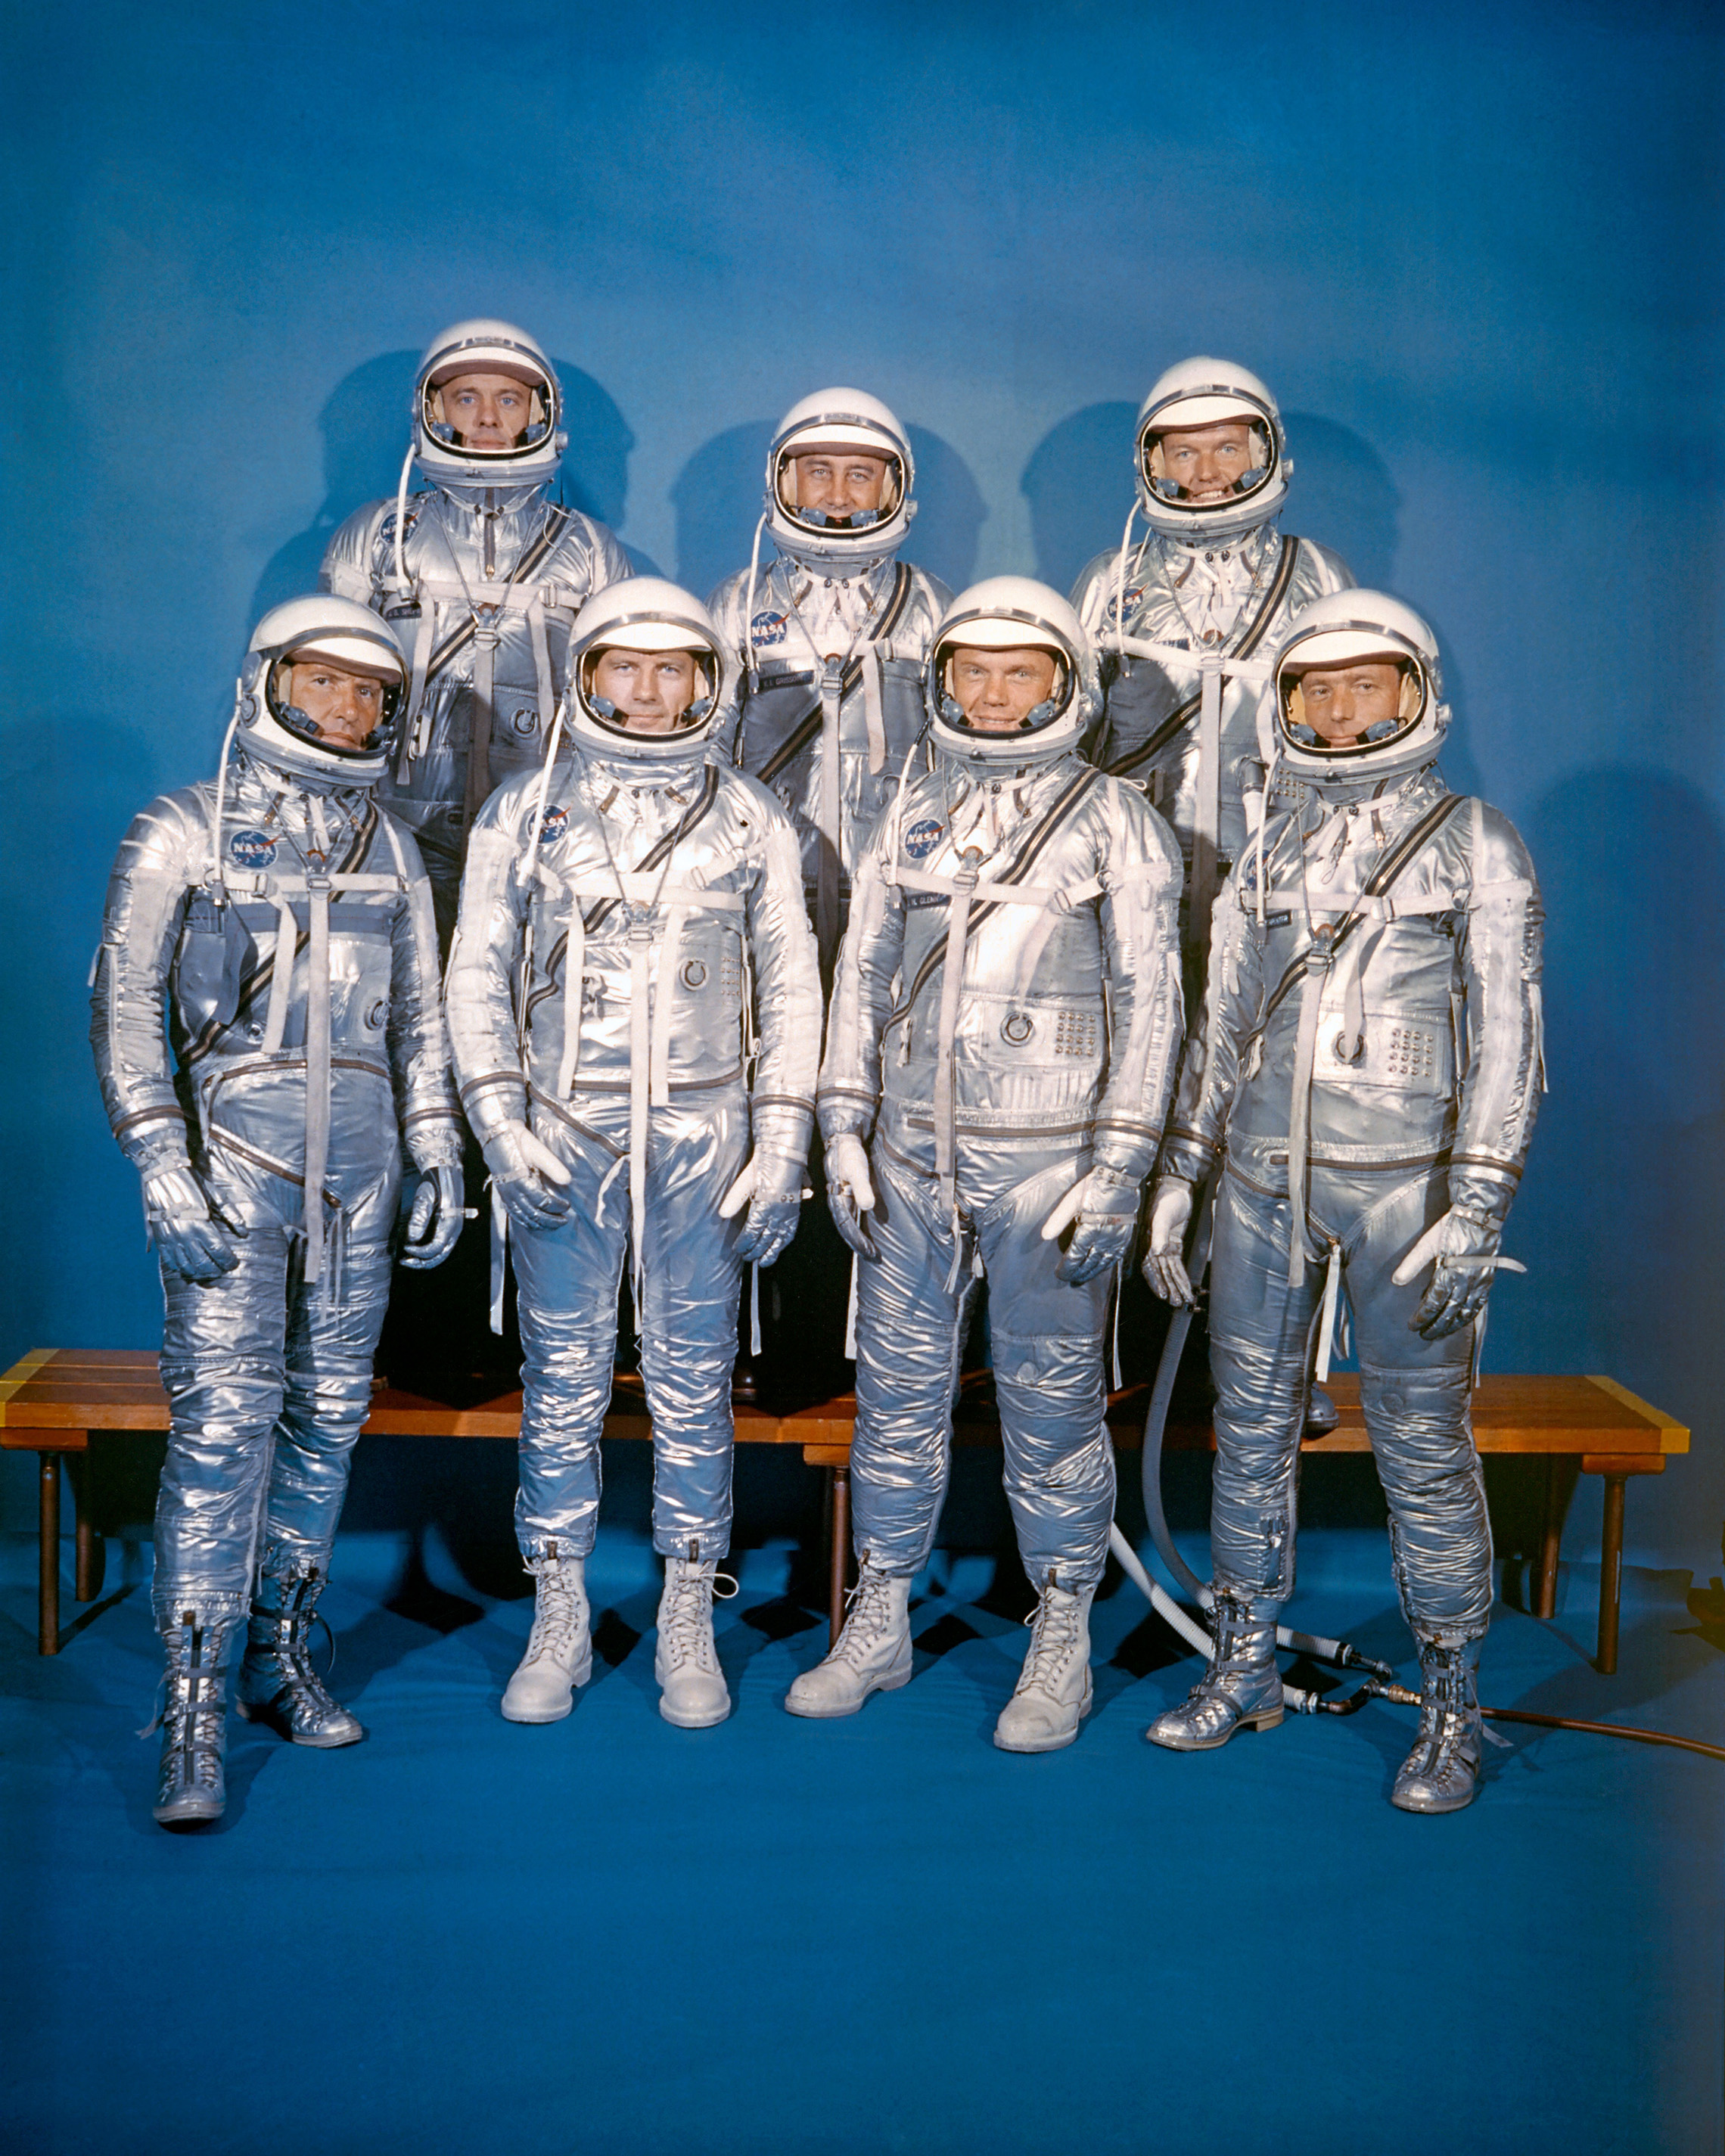 Am 9. April 1959 stellte die NASA ihre erste Astronautenklasse vor, die Mercury 7. Vordere Reihe, von links nach rechts: Walter M. Schirra, Jr., Donald K. "Deke" Slayton, John H. Glenn, Jr. und M. Scott Carpenter; hintere Reihe, Alan B. Shepard, Jr., Virgil I. "Gus" Grissom und L. Gordon Cooper, Jr. (NASA)"Deke" Slayton, John H. Glenn, Jr., and M. Scott Carpenter; back row, Alan B. Shepard, Jr., Virgil I. "Gus" Grissom, and L. Gordon Cooper, Jr. (NASA)